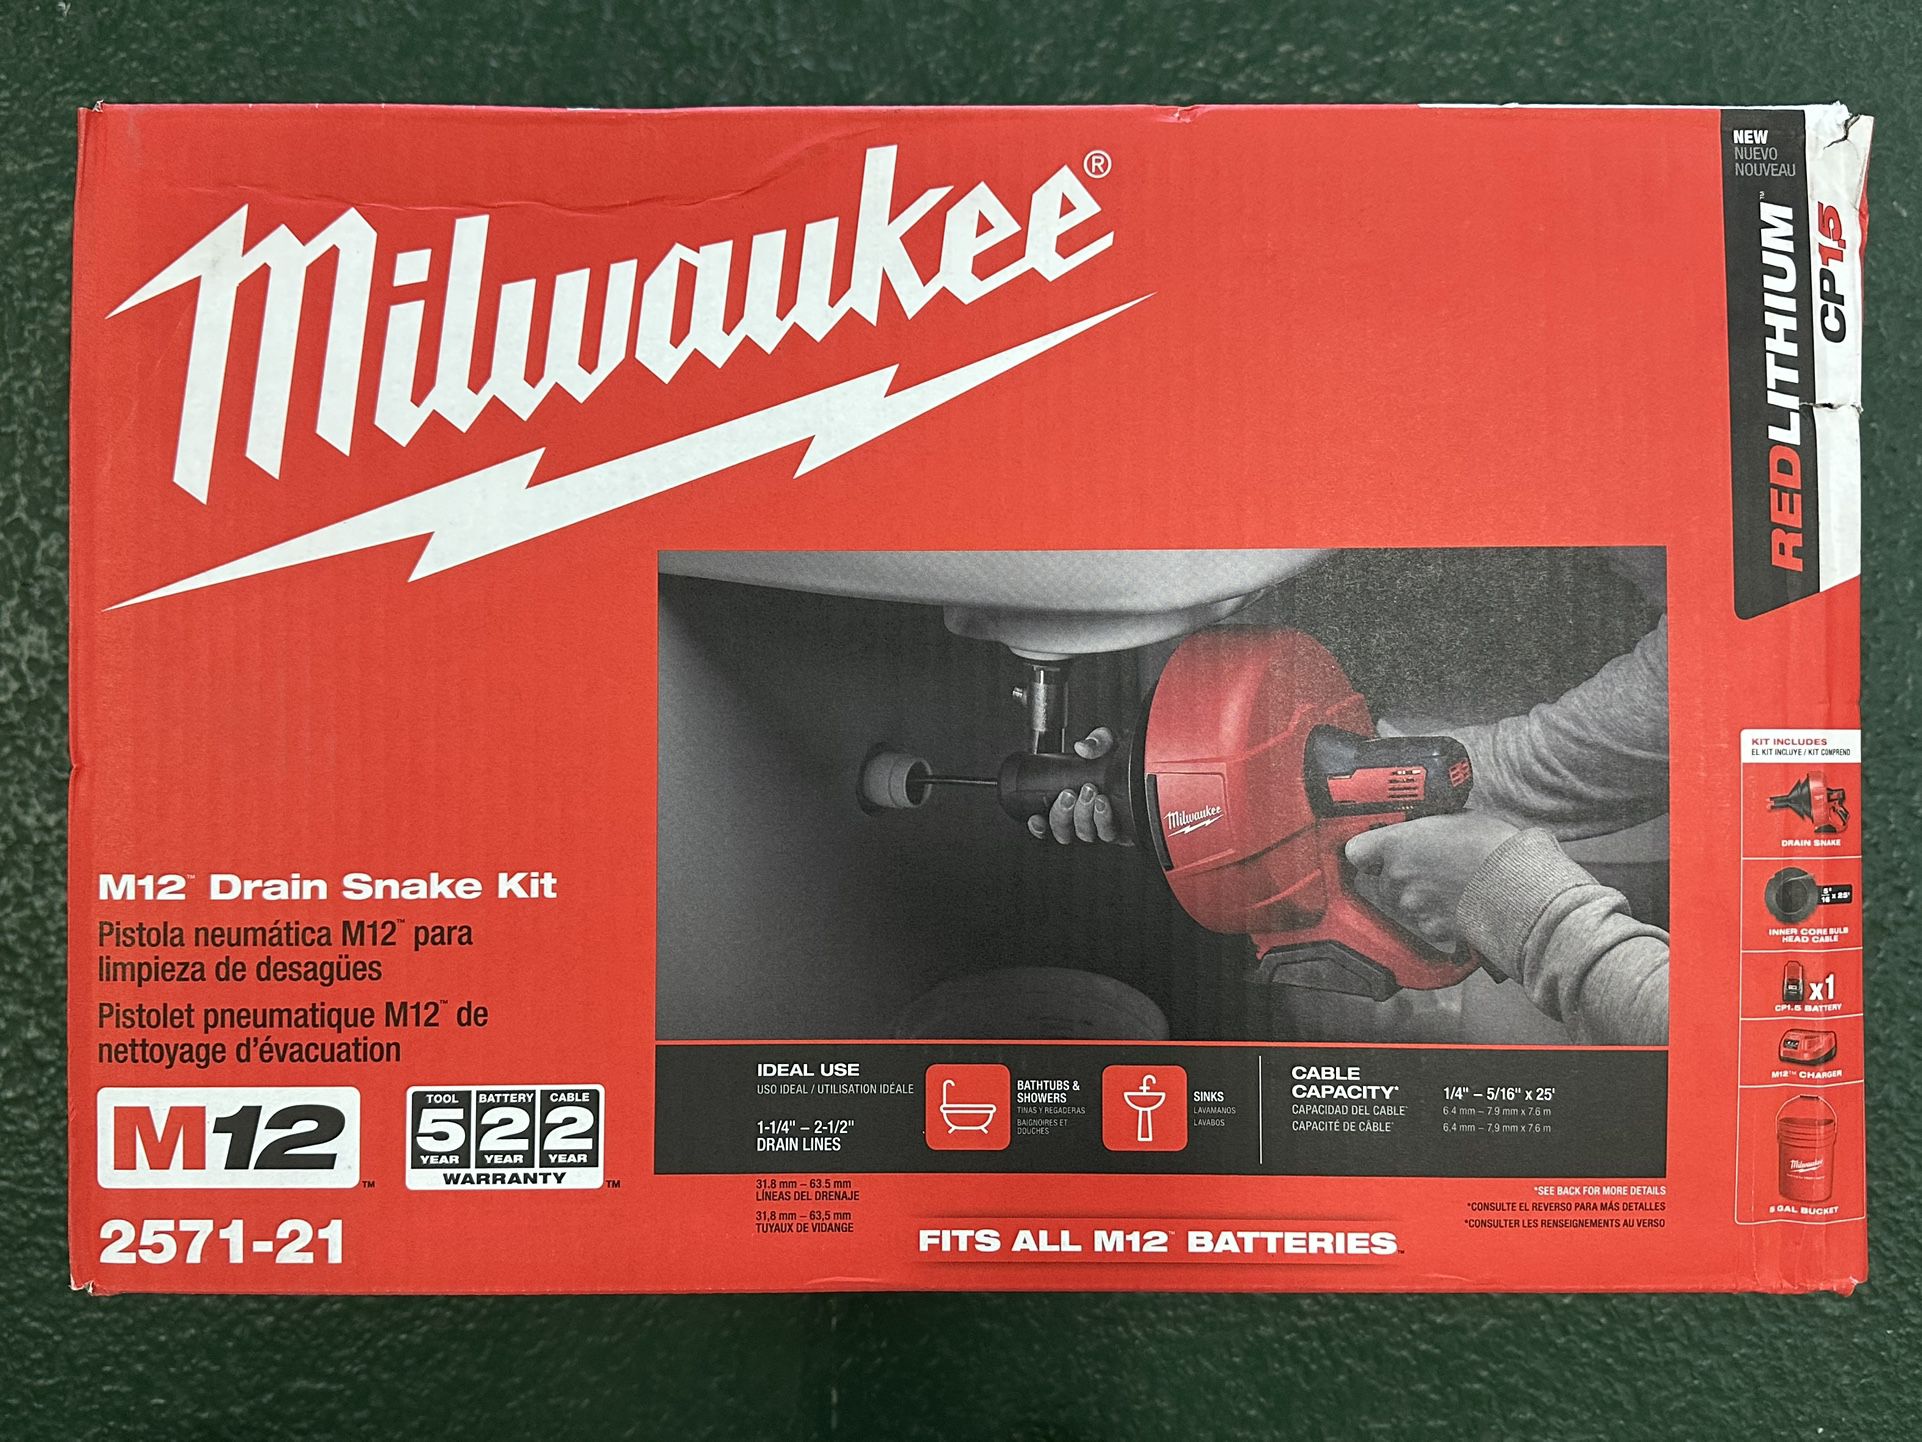 NEW! Milwaukee 2571-21 M12 Drain Snake Auger Kit